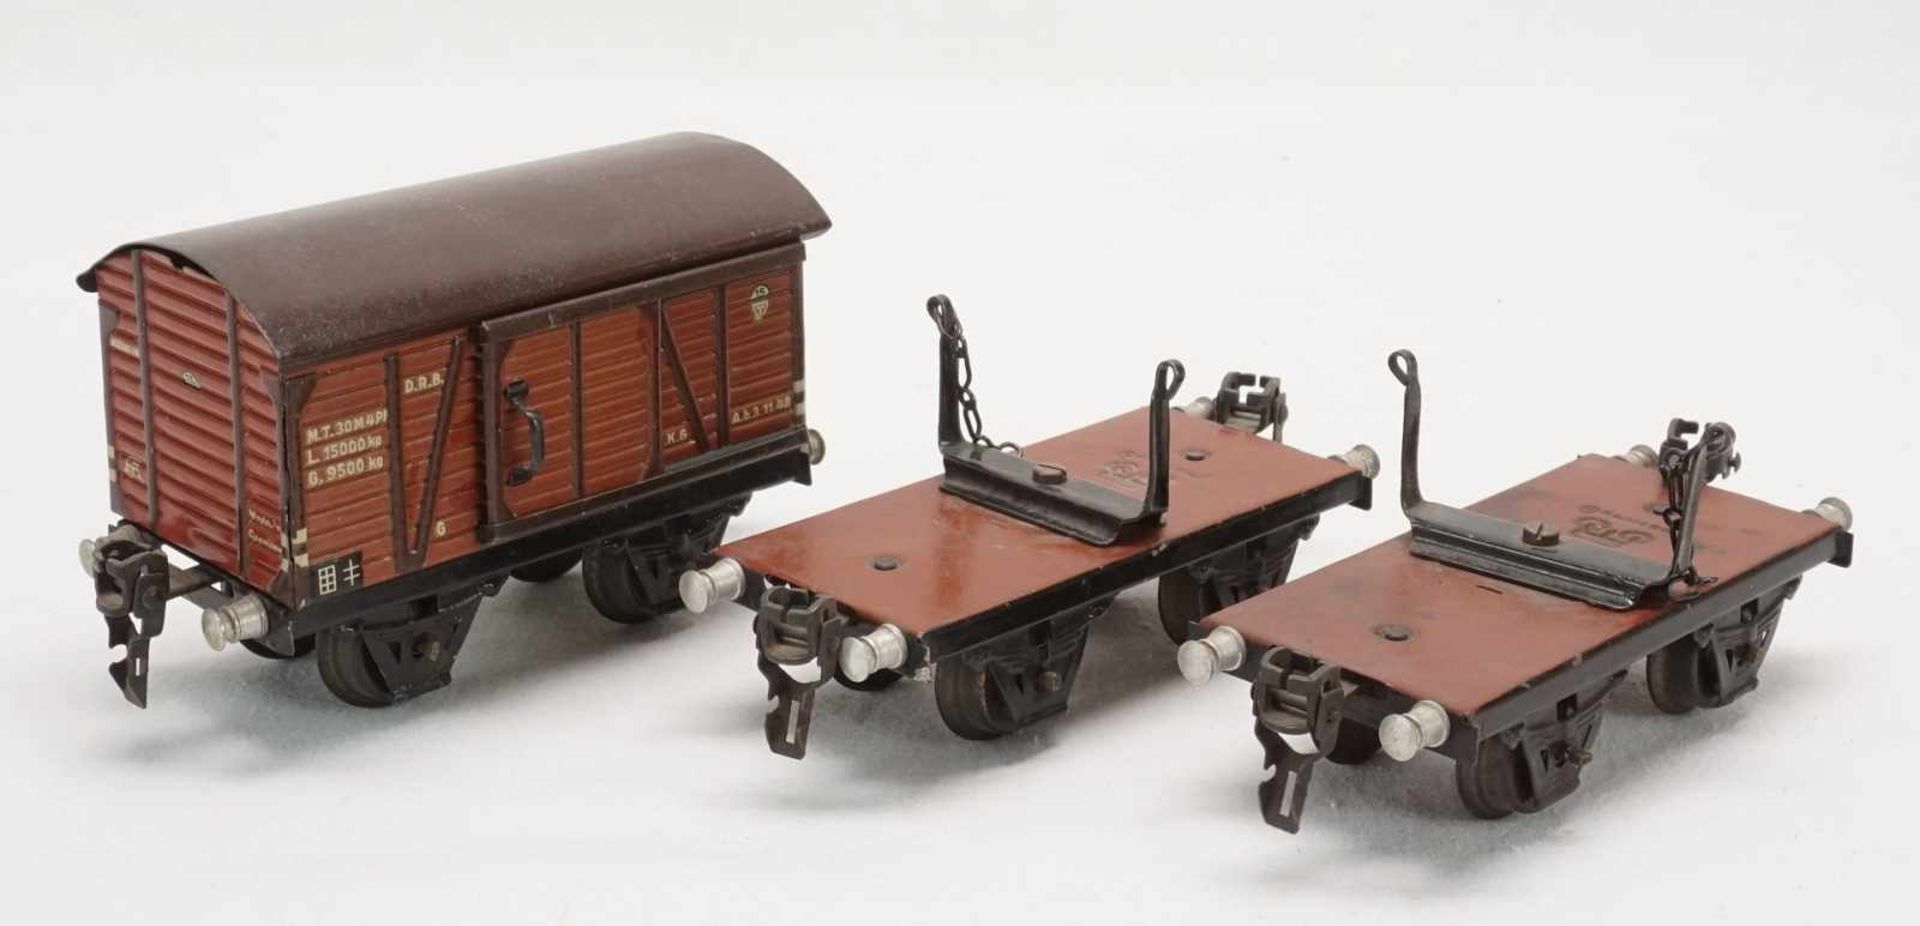 Eisenbahnanlage mit Lok und Wagen, Spur 0, um 1930Blech lithografiert, elektrische Schlepptenderlok, - Image 7 of 8